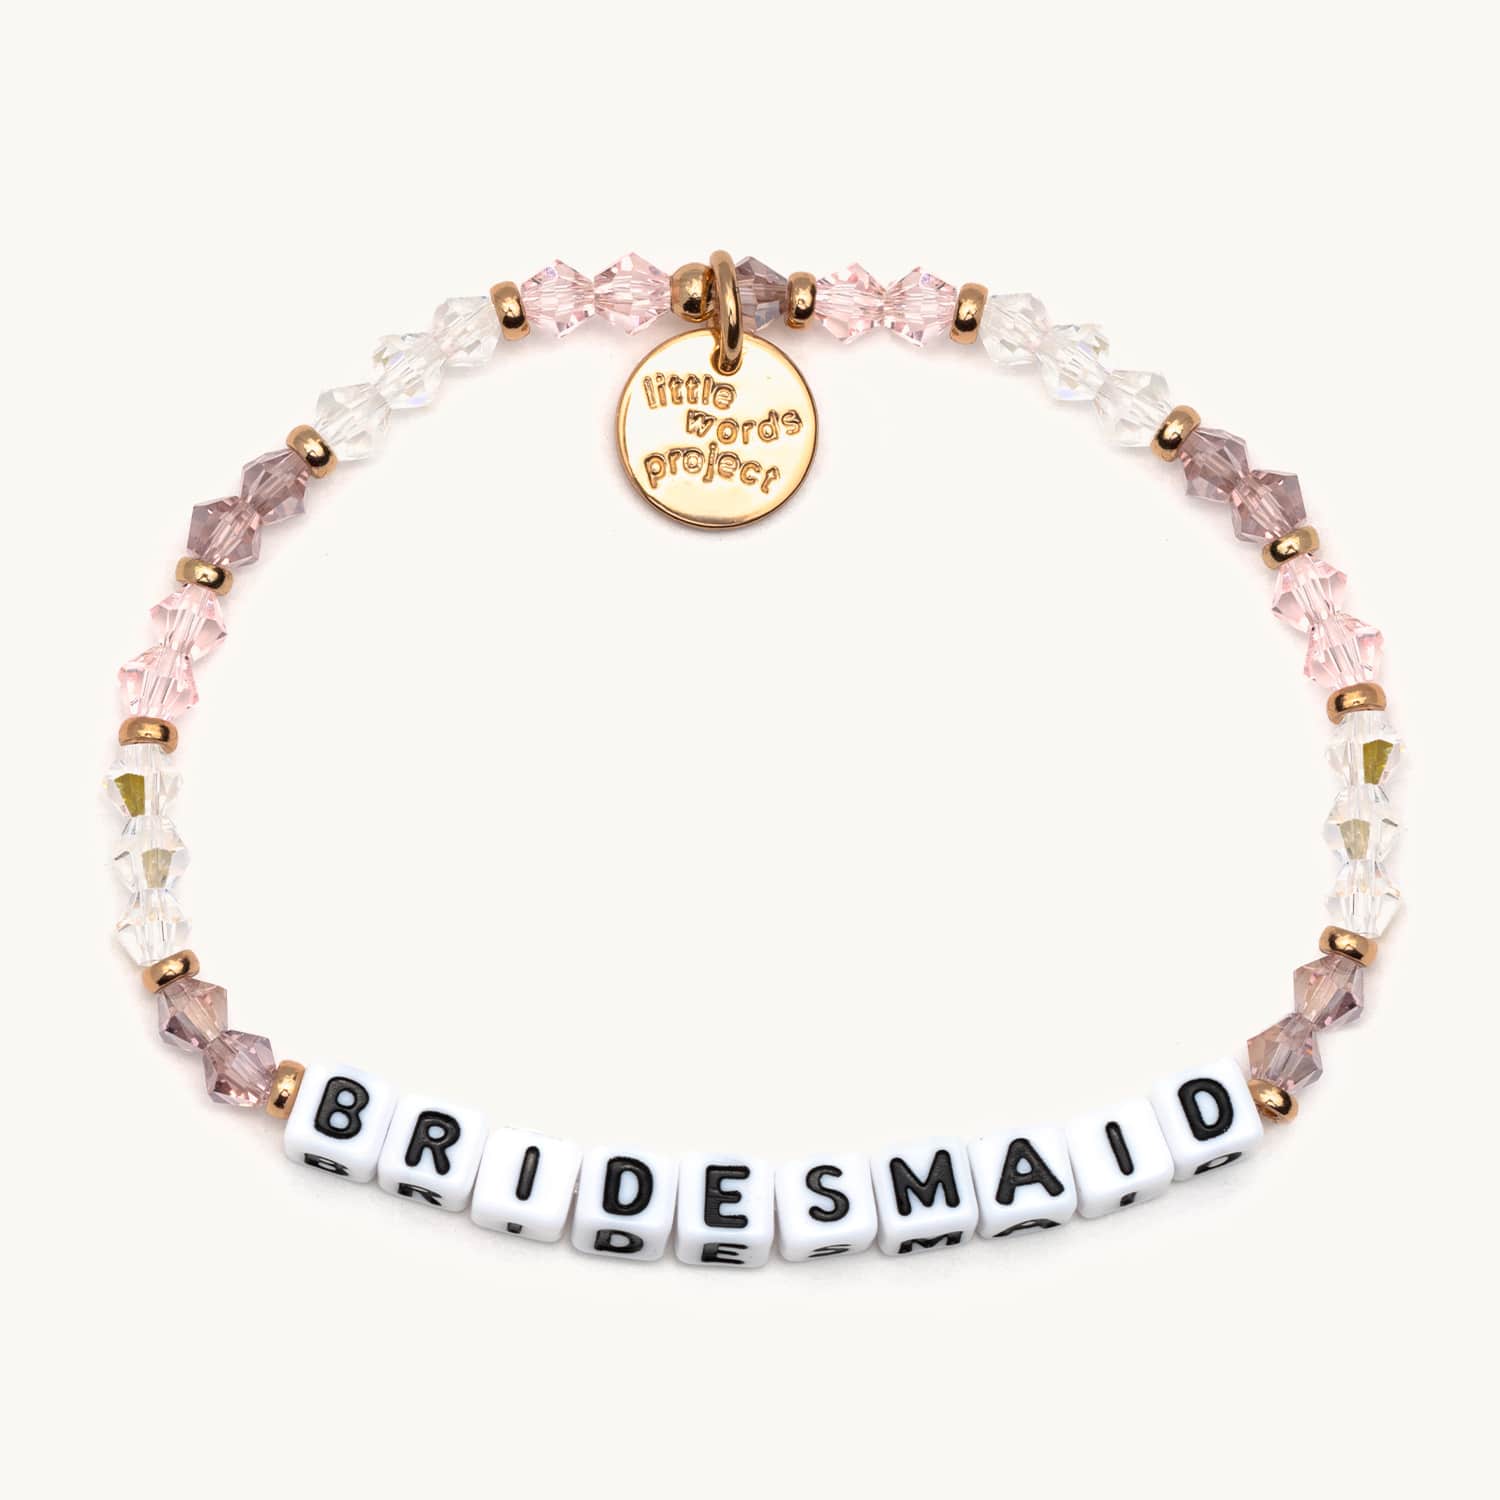 Bridesmaid Bracelet | Bracelets for Bridesmaids - Little Words Project